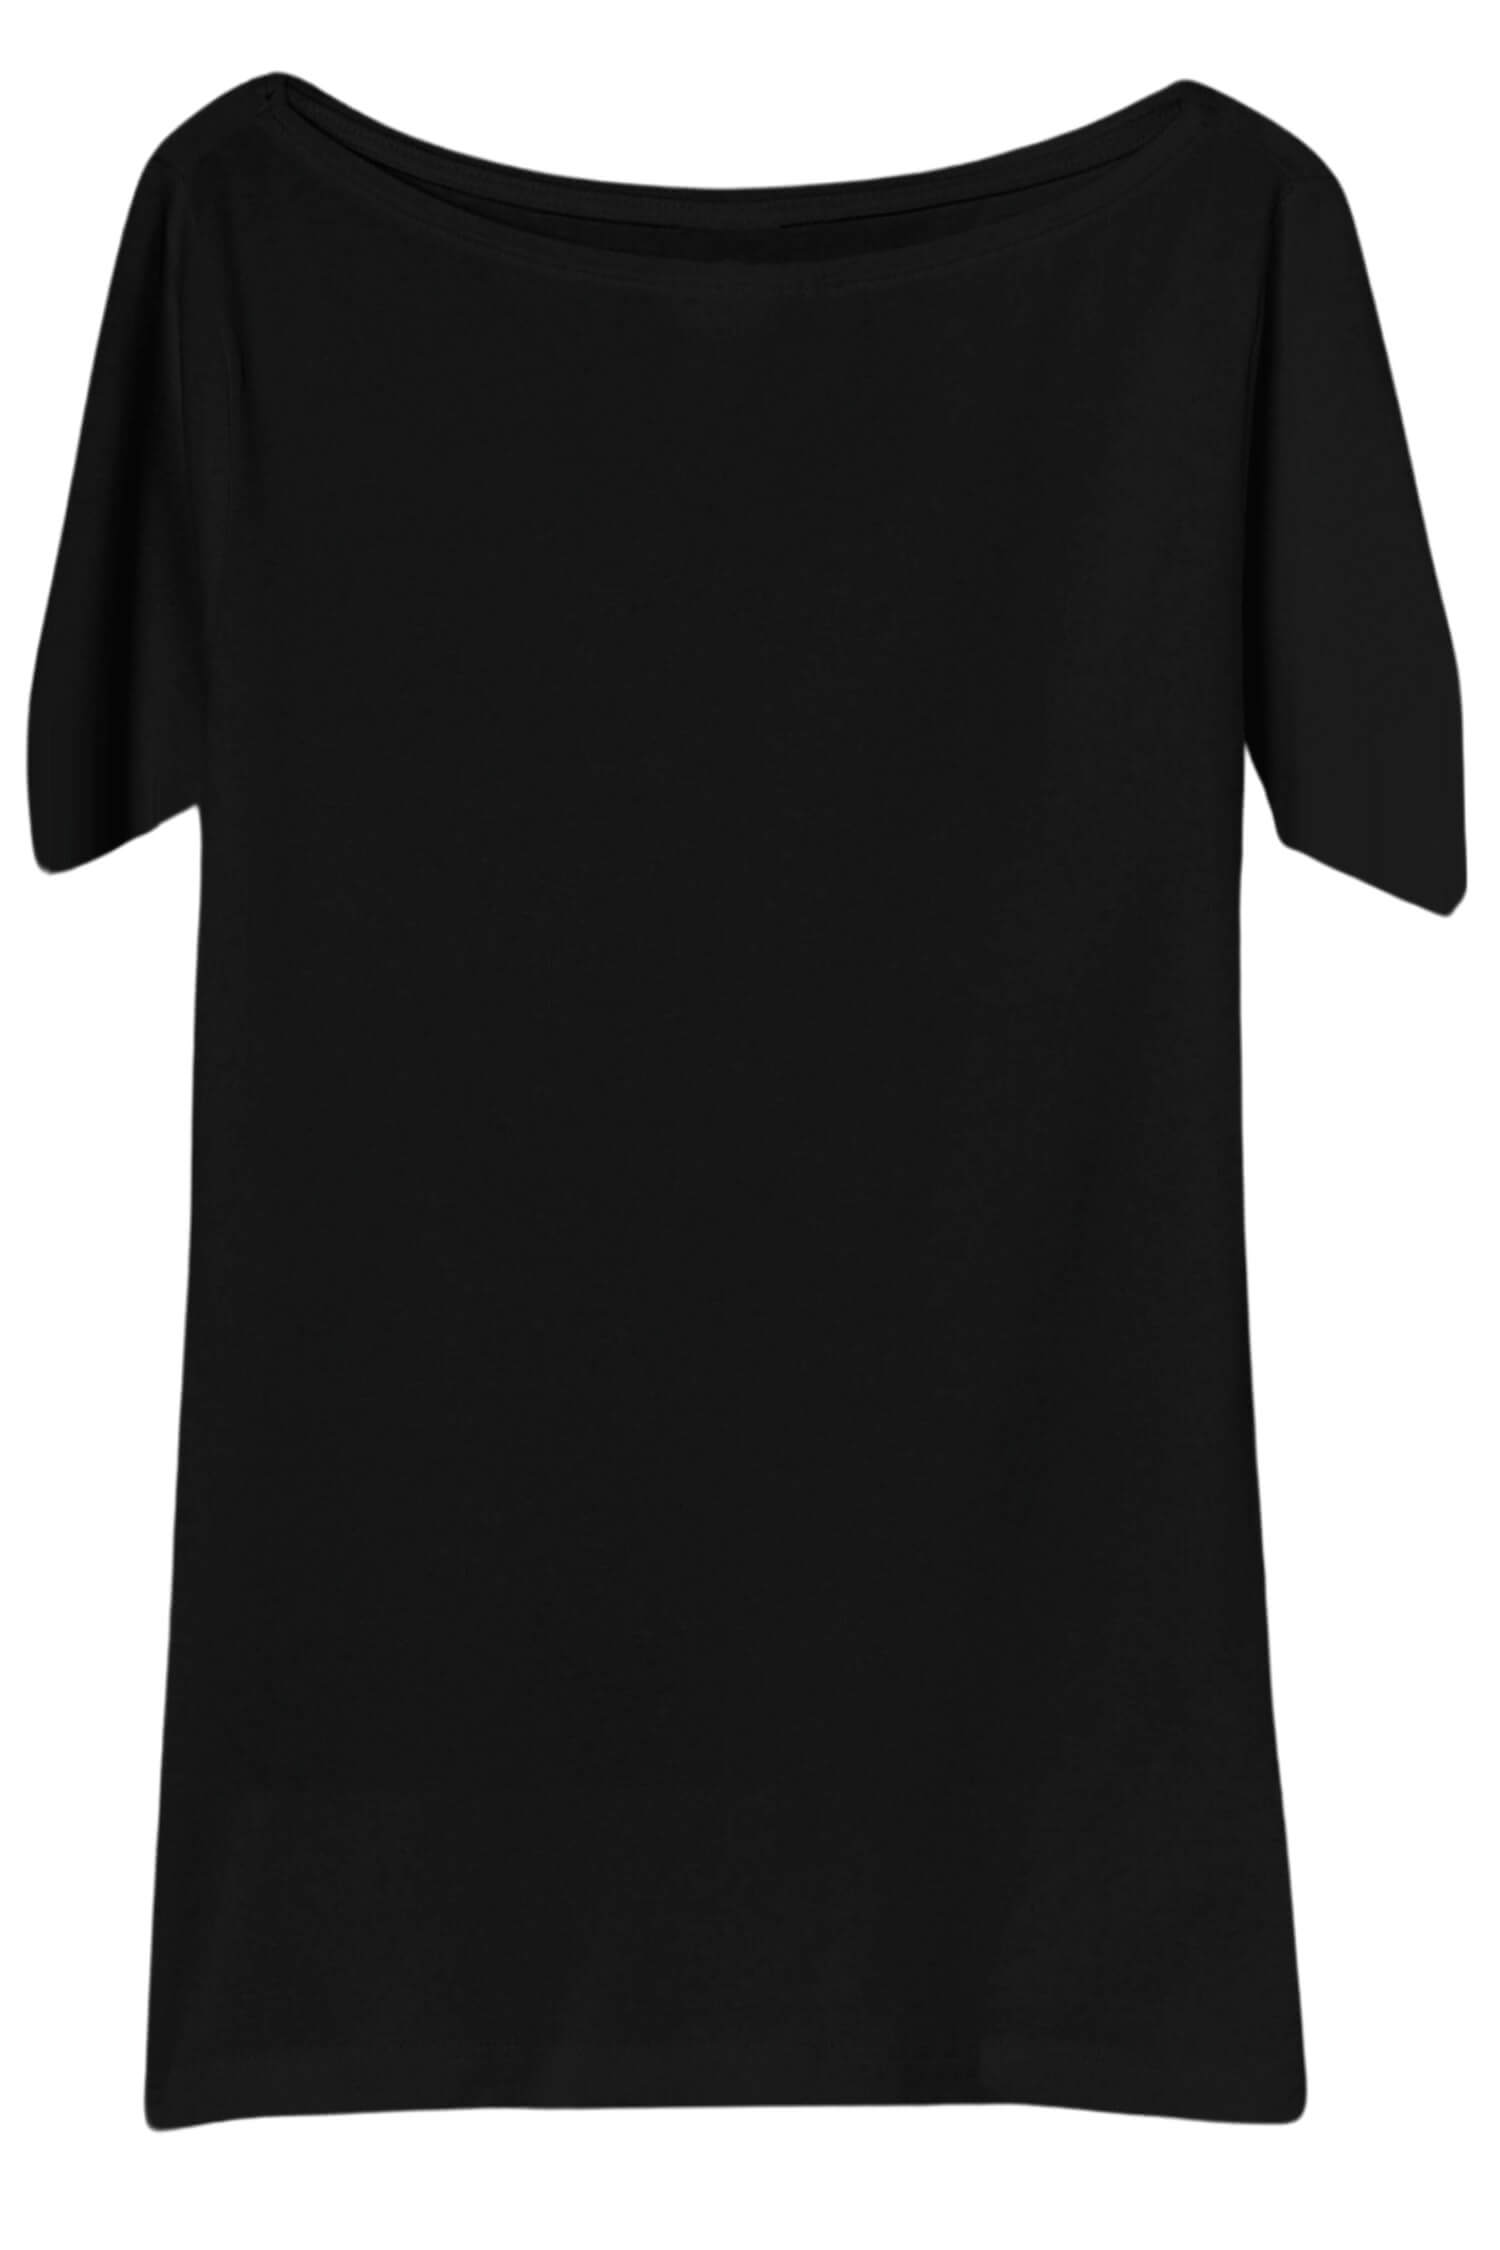 Danica dámské tričko s krátkým rukávem TSK-1005 M černá